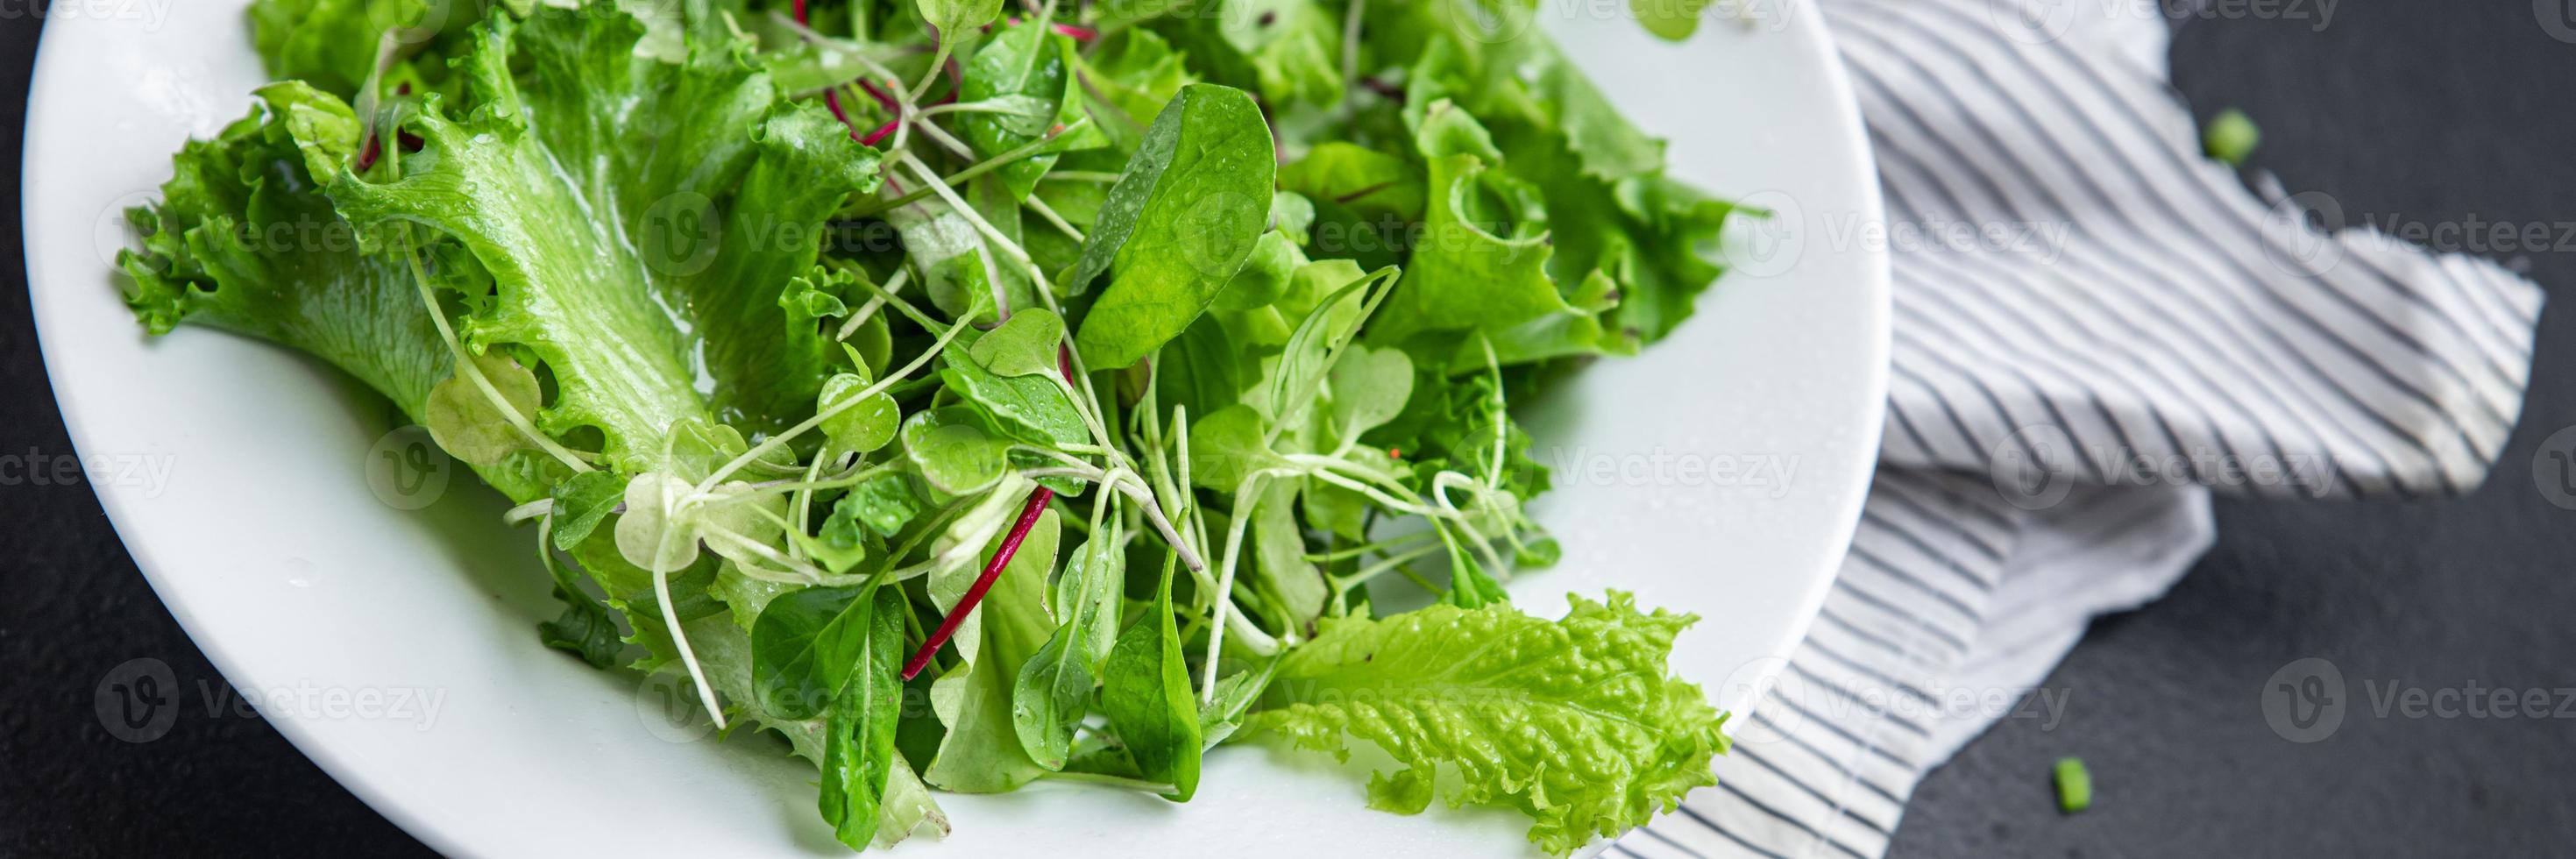 frischer Salatmix Blätter Kräuter foto